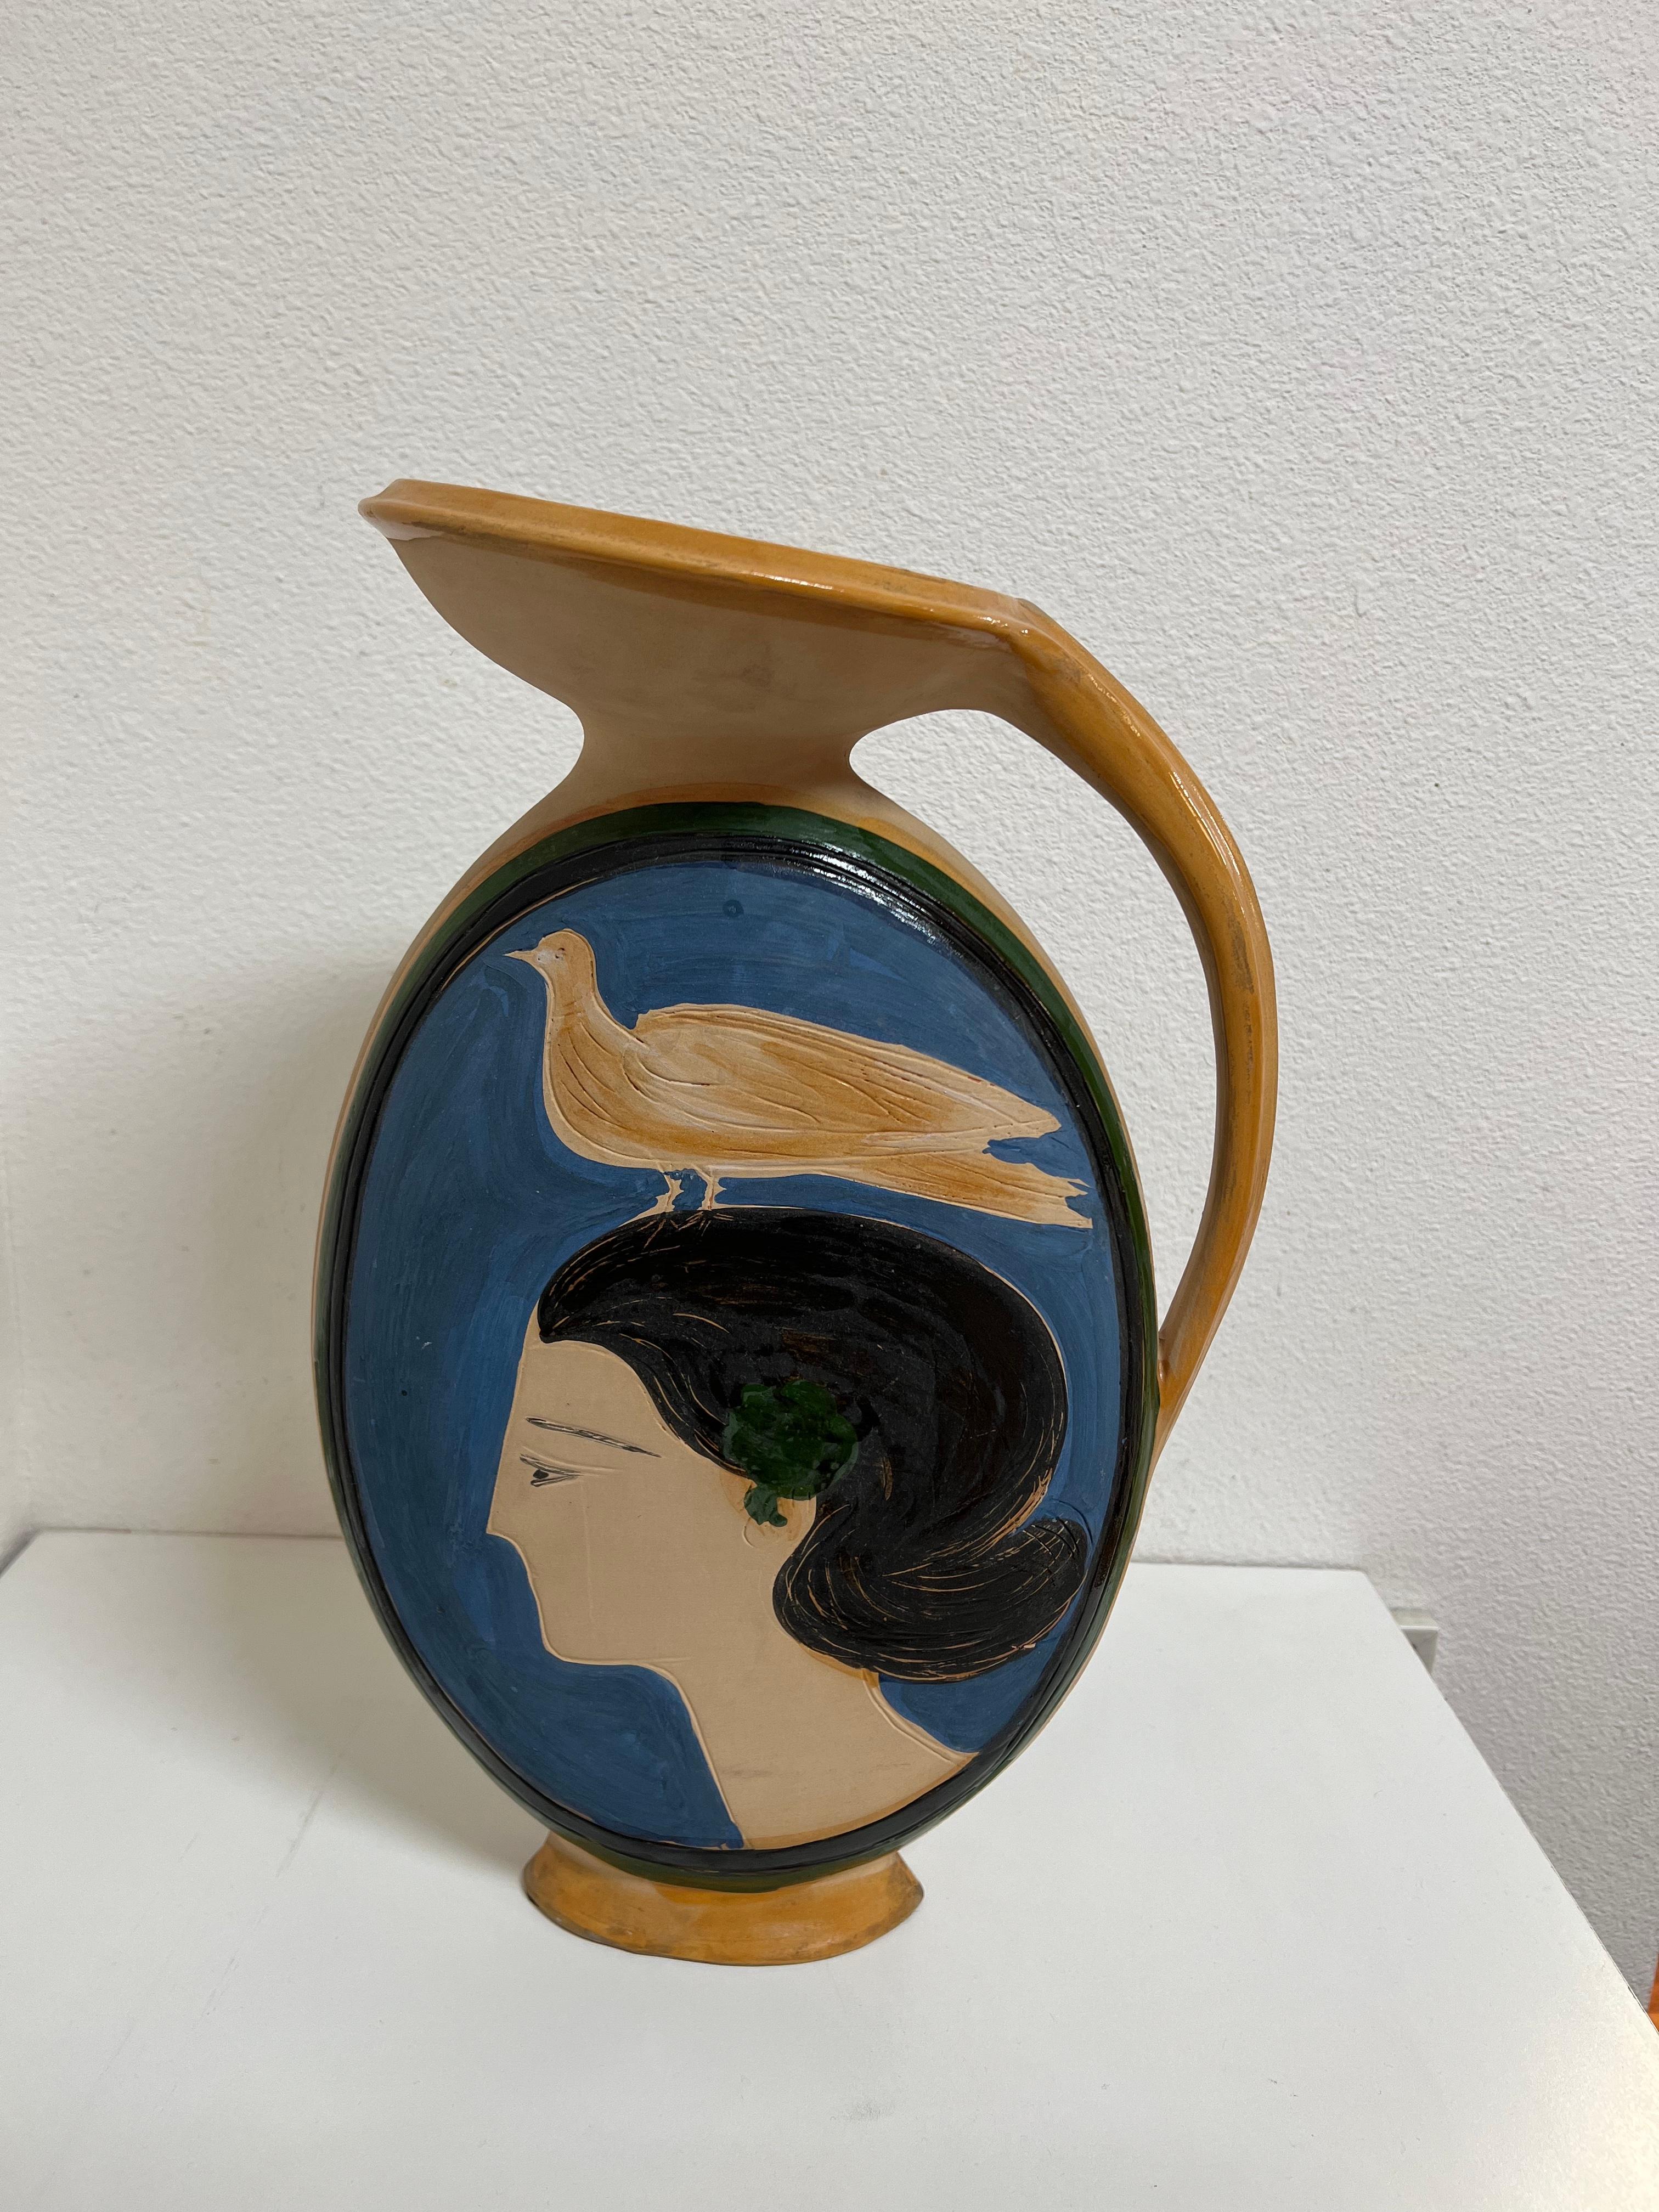 André Brasilier, Femme à l'oiseau, céramique, inscrite et numérotée 5